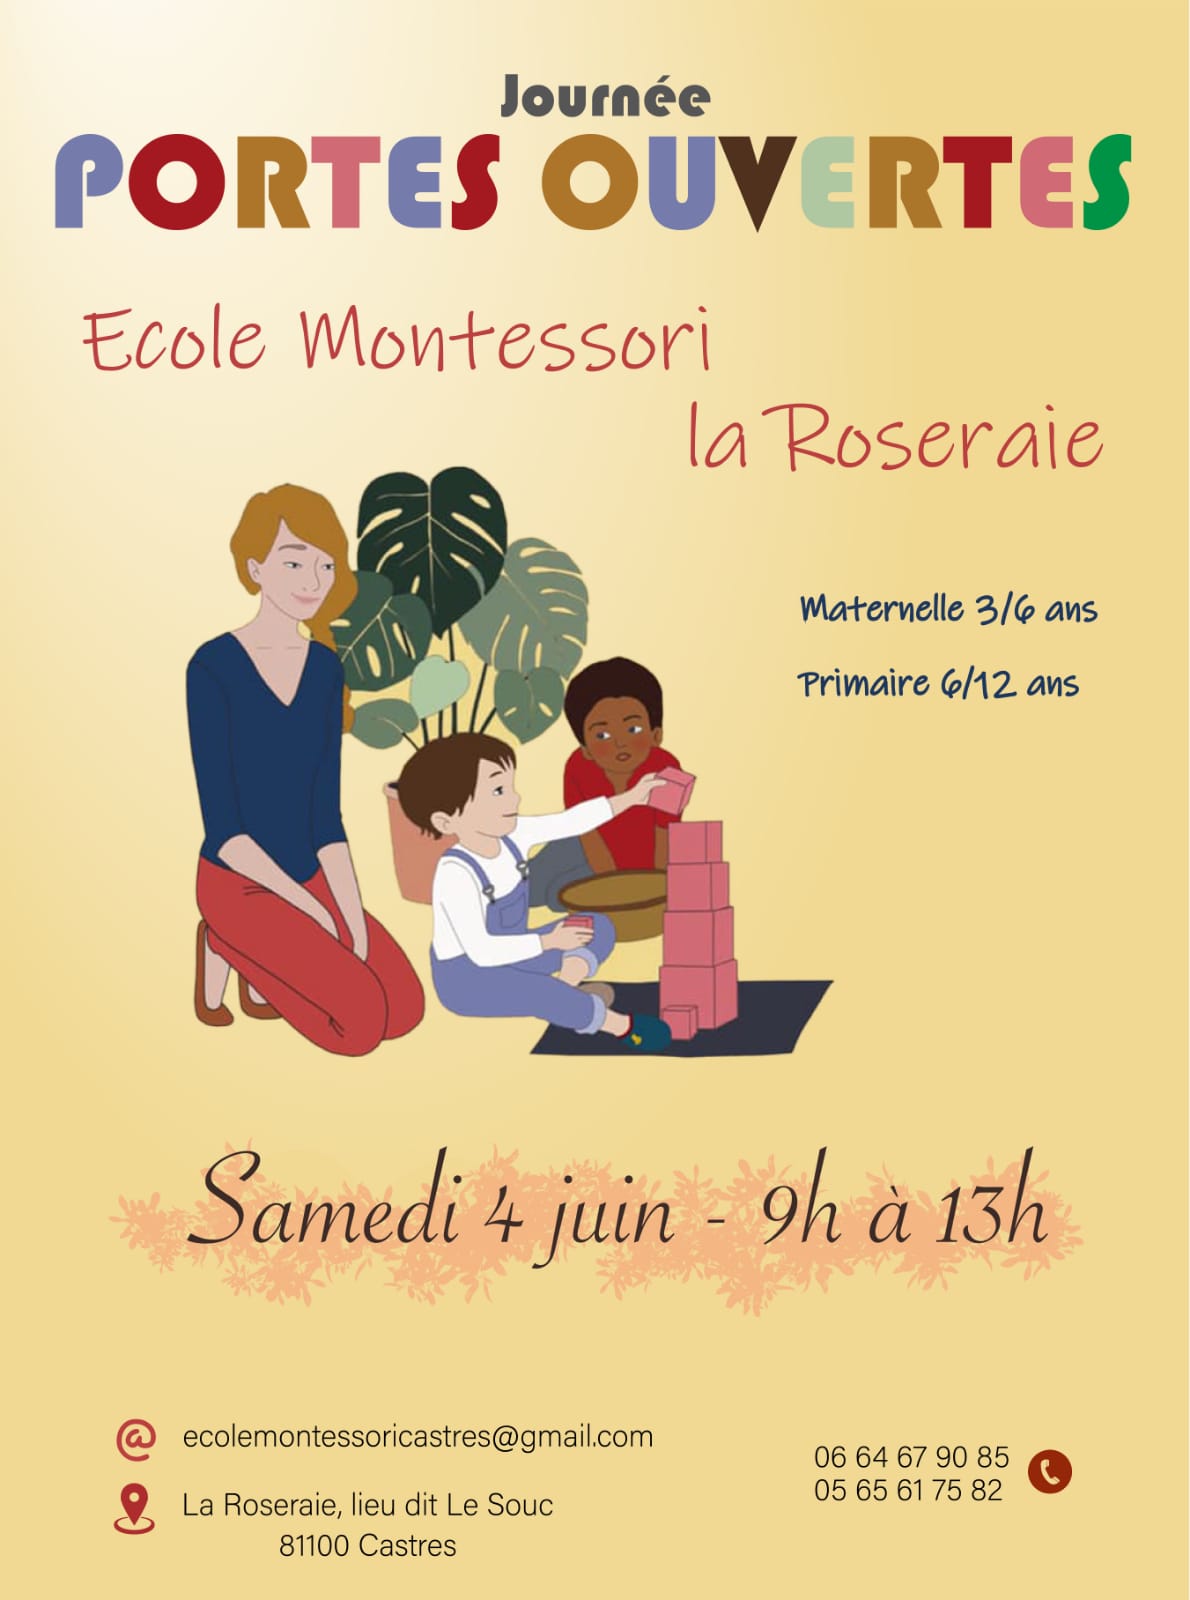 http://ecole-montessori-castres.fr/wp-content/uploads/2022/05/porte-ouverte.jpg